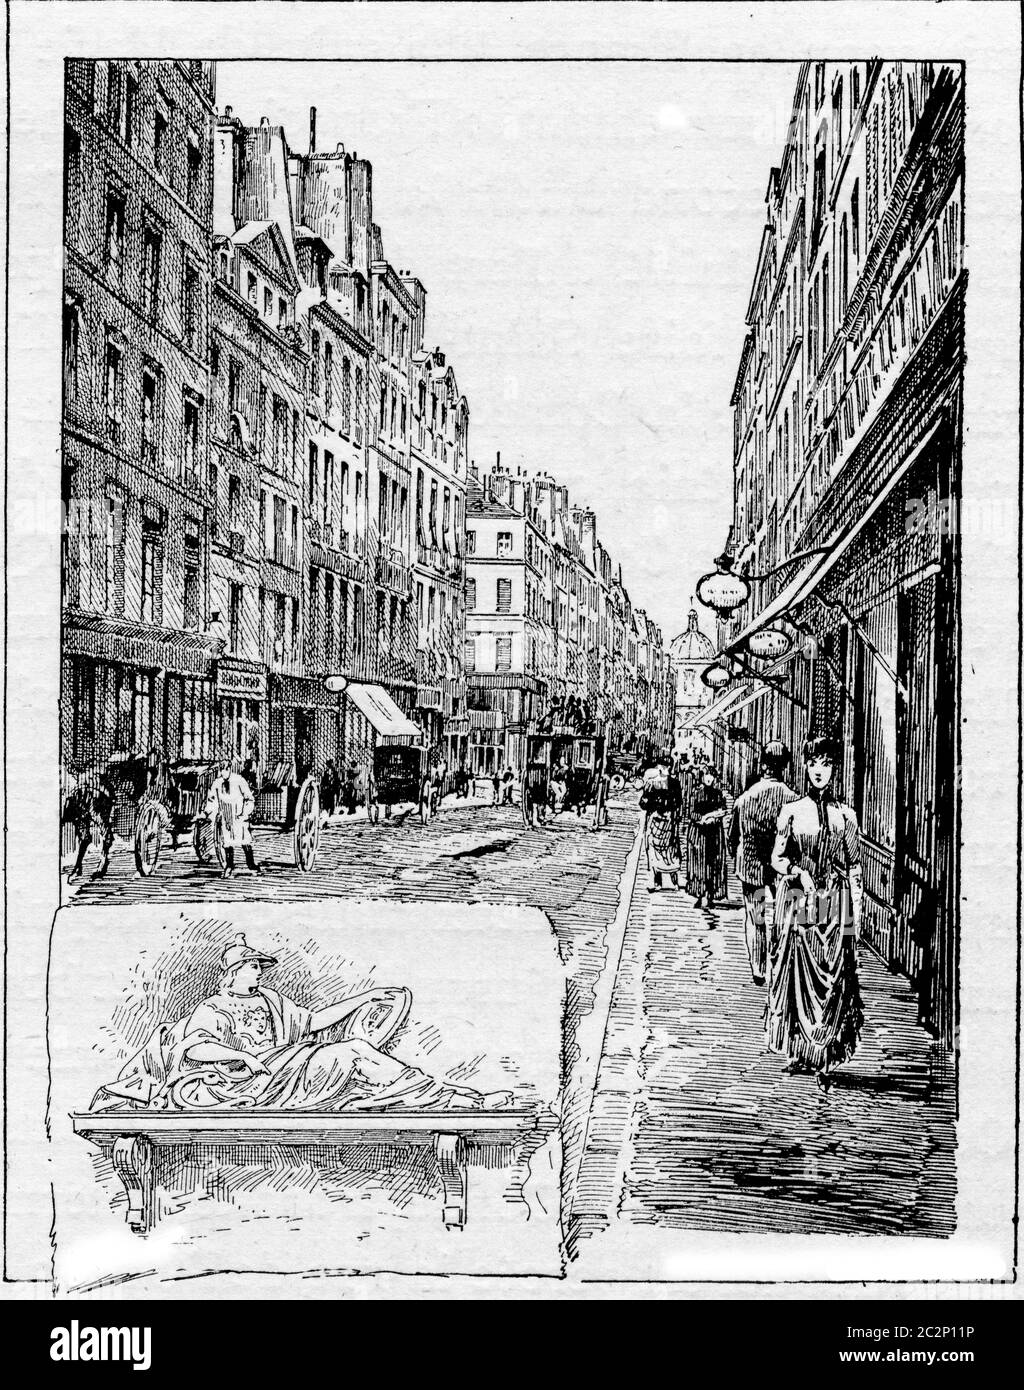 Antica strada che nel 1688 divenne Rue de la Comedie, a Parigi, Francia. Una scultura della dea romana Minerva si trova in Rue de la come, n.14 Foto Stock